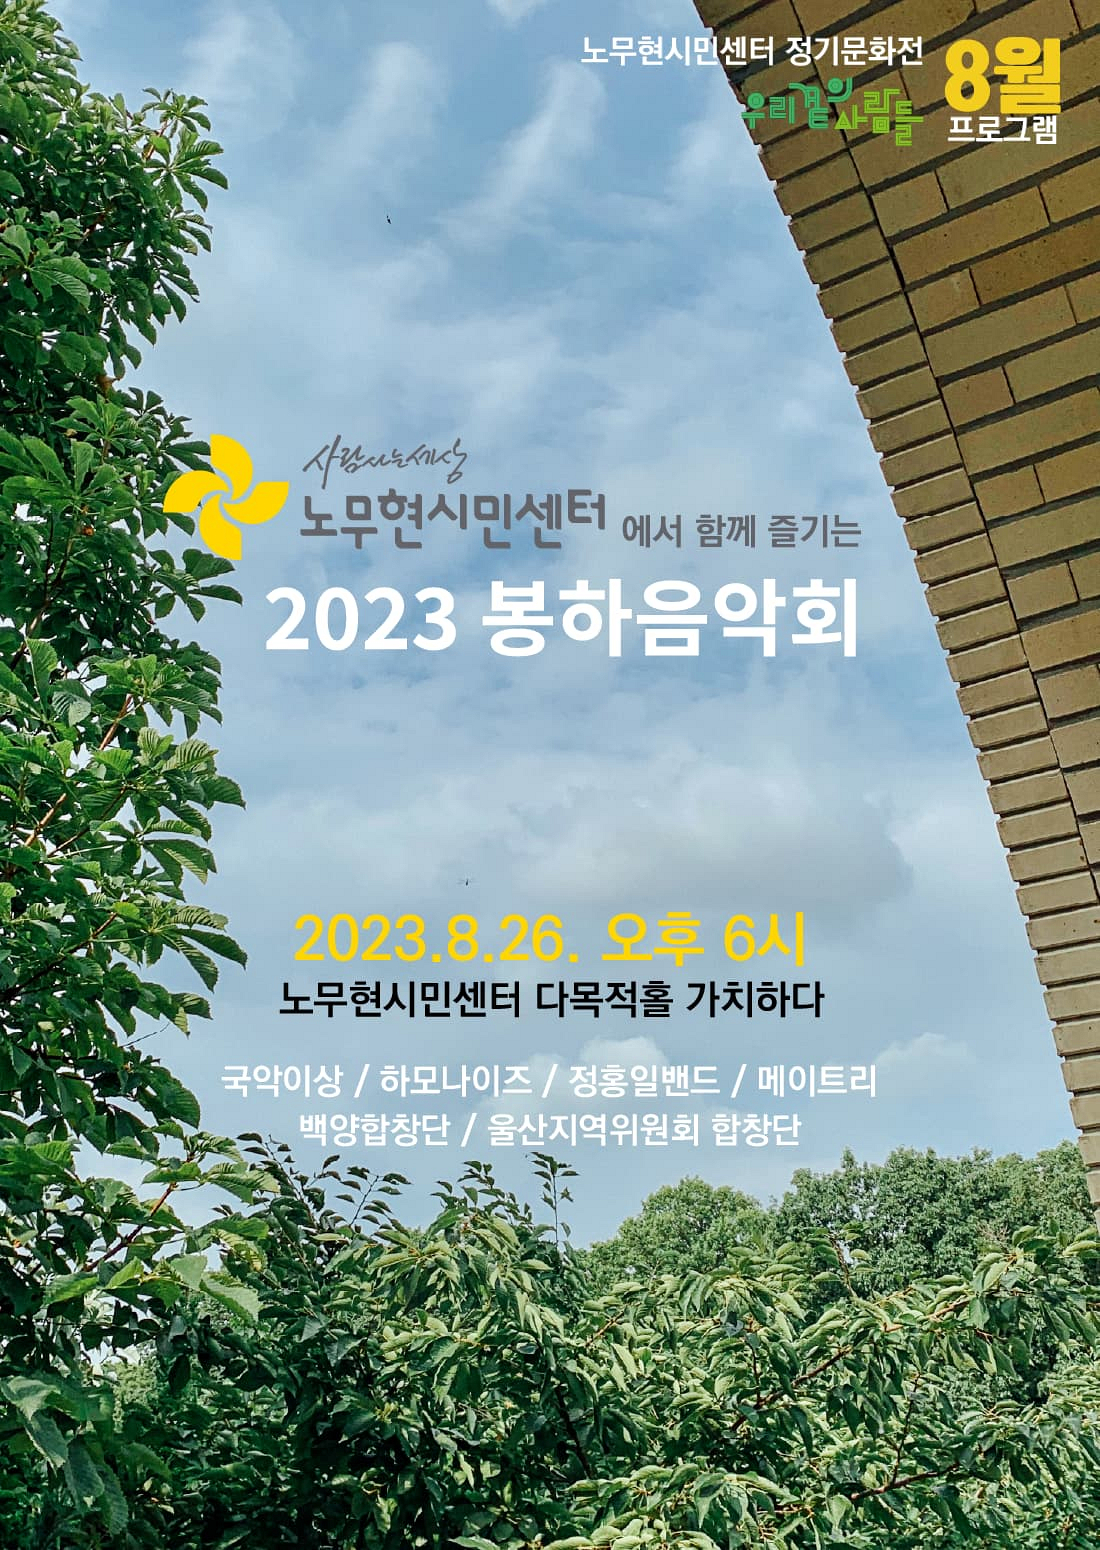 [정기문화전 우리 곁의 사람들] 시민센터에서 함께 즐기는 2023 봉하음악회